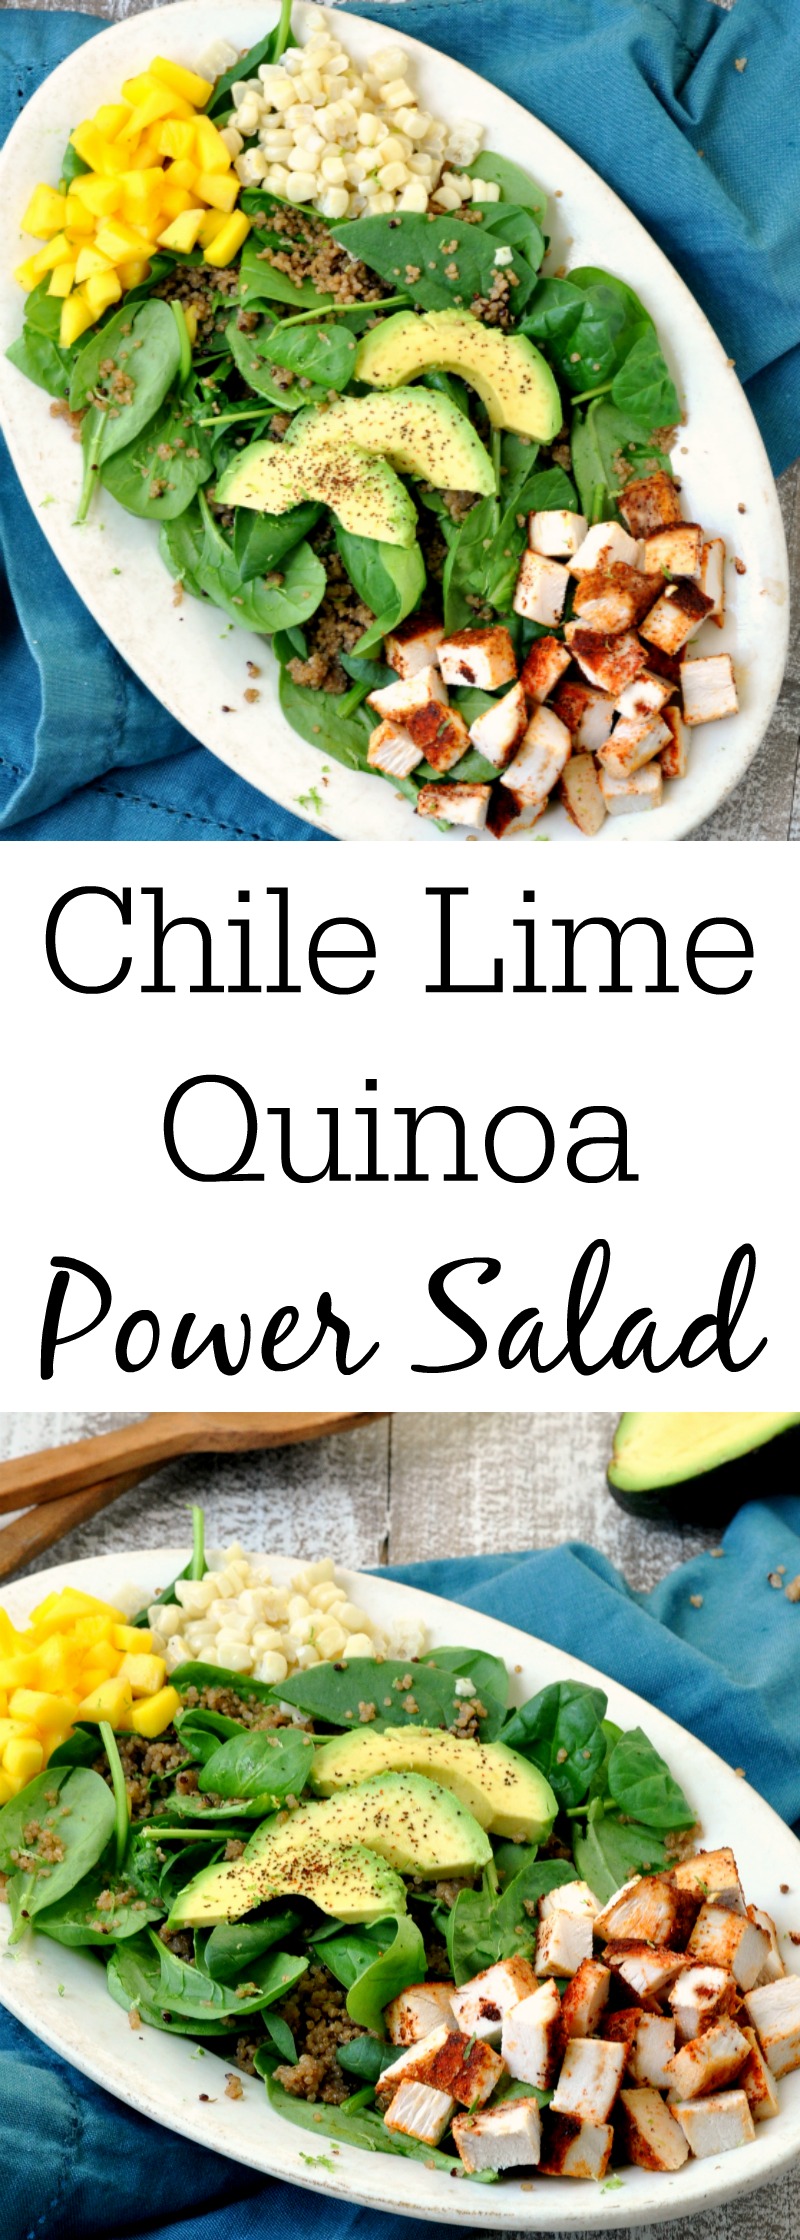 Mexican Quinoa Power Salad